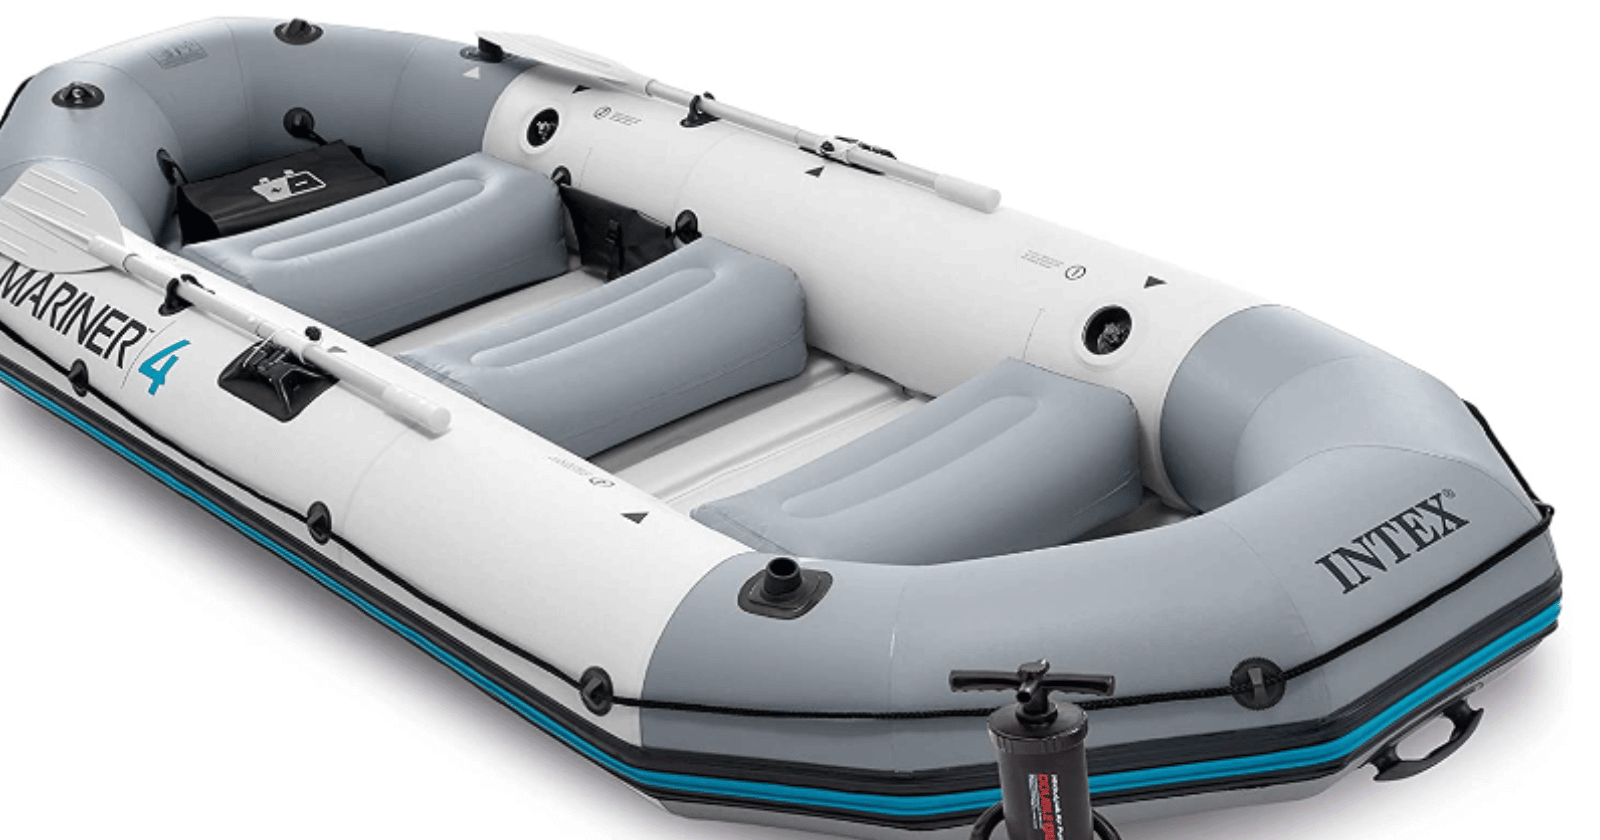 Intex Mariner 4 Inflatable Boat